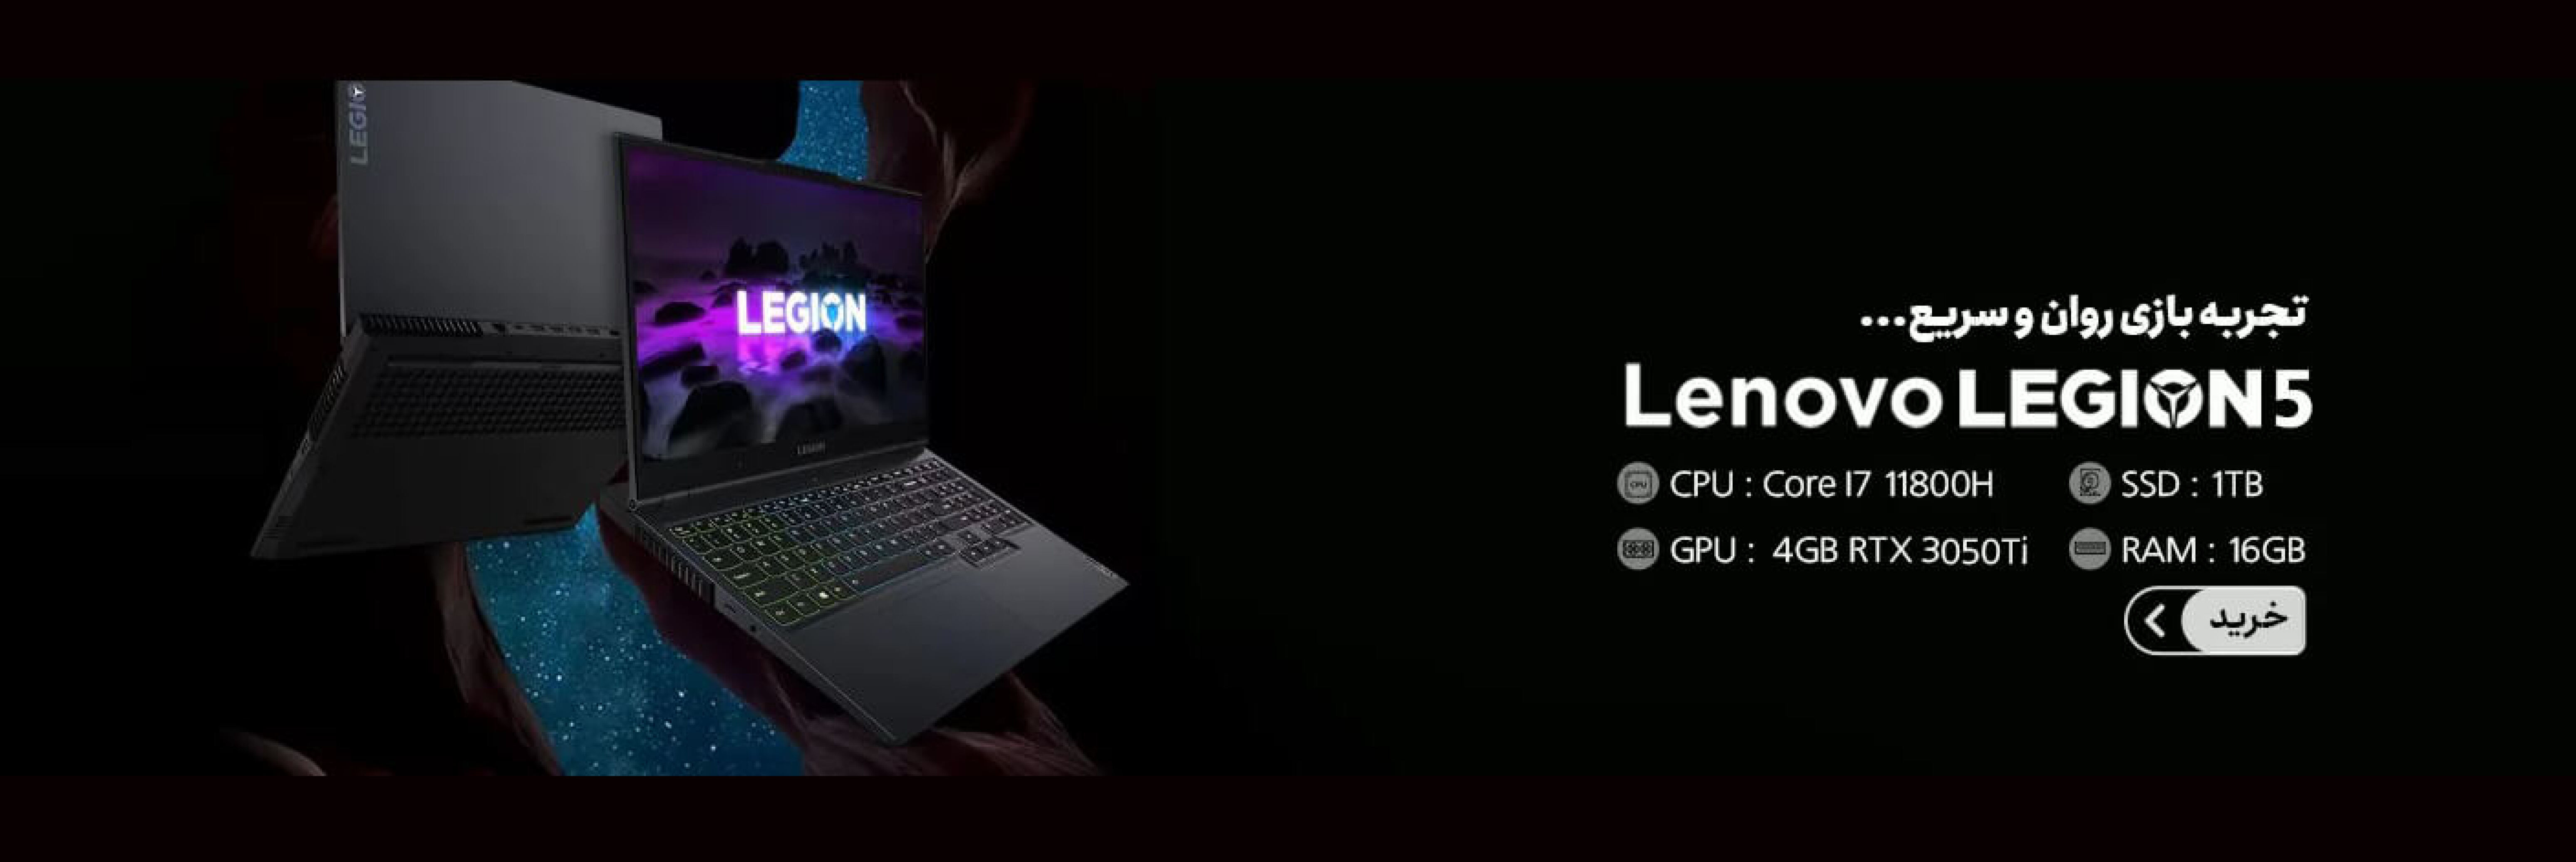  Lenovo Legion 5 